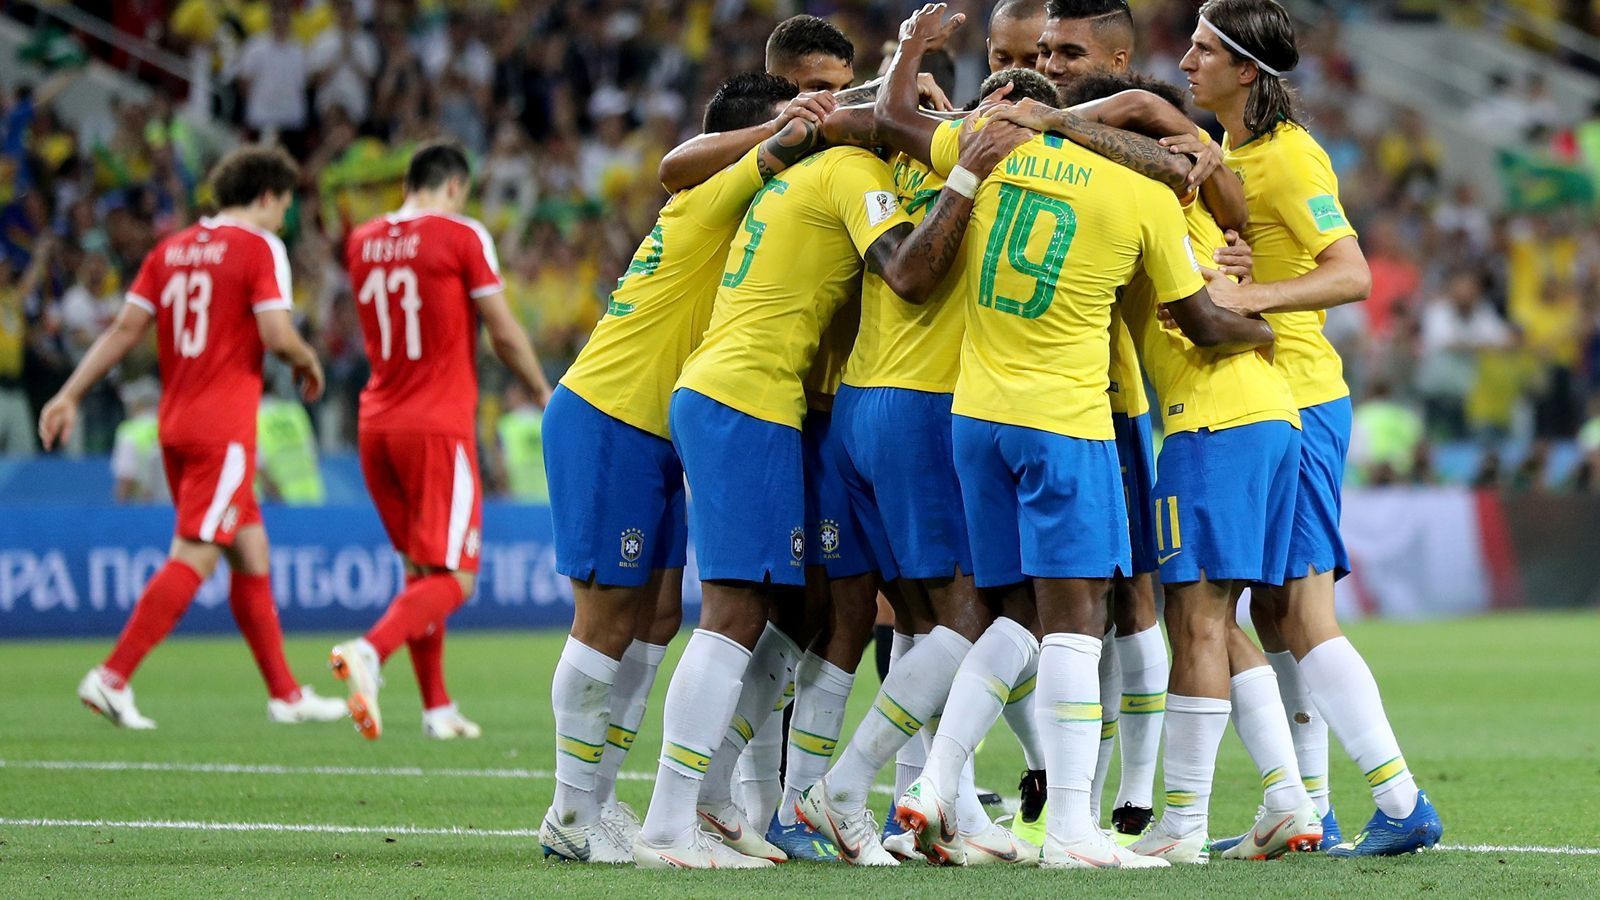 
                <strong>1. Gruppe E: Brasilien</strong><br>
                Rekordweltmeister Brasilien ist durch. Die Mannschaft von Trainer Tite entscheidet die Gruppe E zu ihren Gunsten. Nach dem Auftakt-Remis gegen die Schweiz gewinnen die Südamerikaner die folgenden beiden Spiele und ziehen als Gruppensieger ins Achtelfinale ein. Dort wartet Mexiko.
              